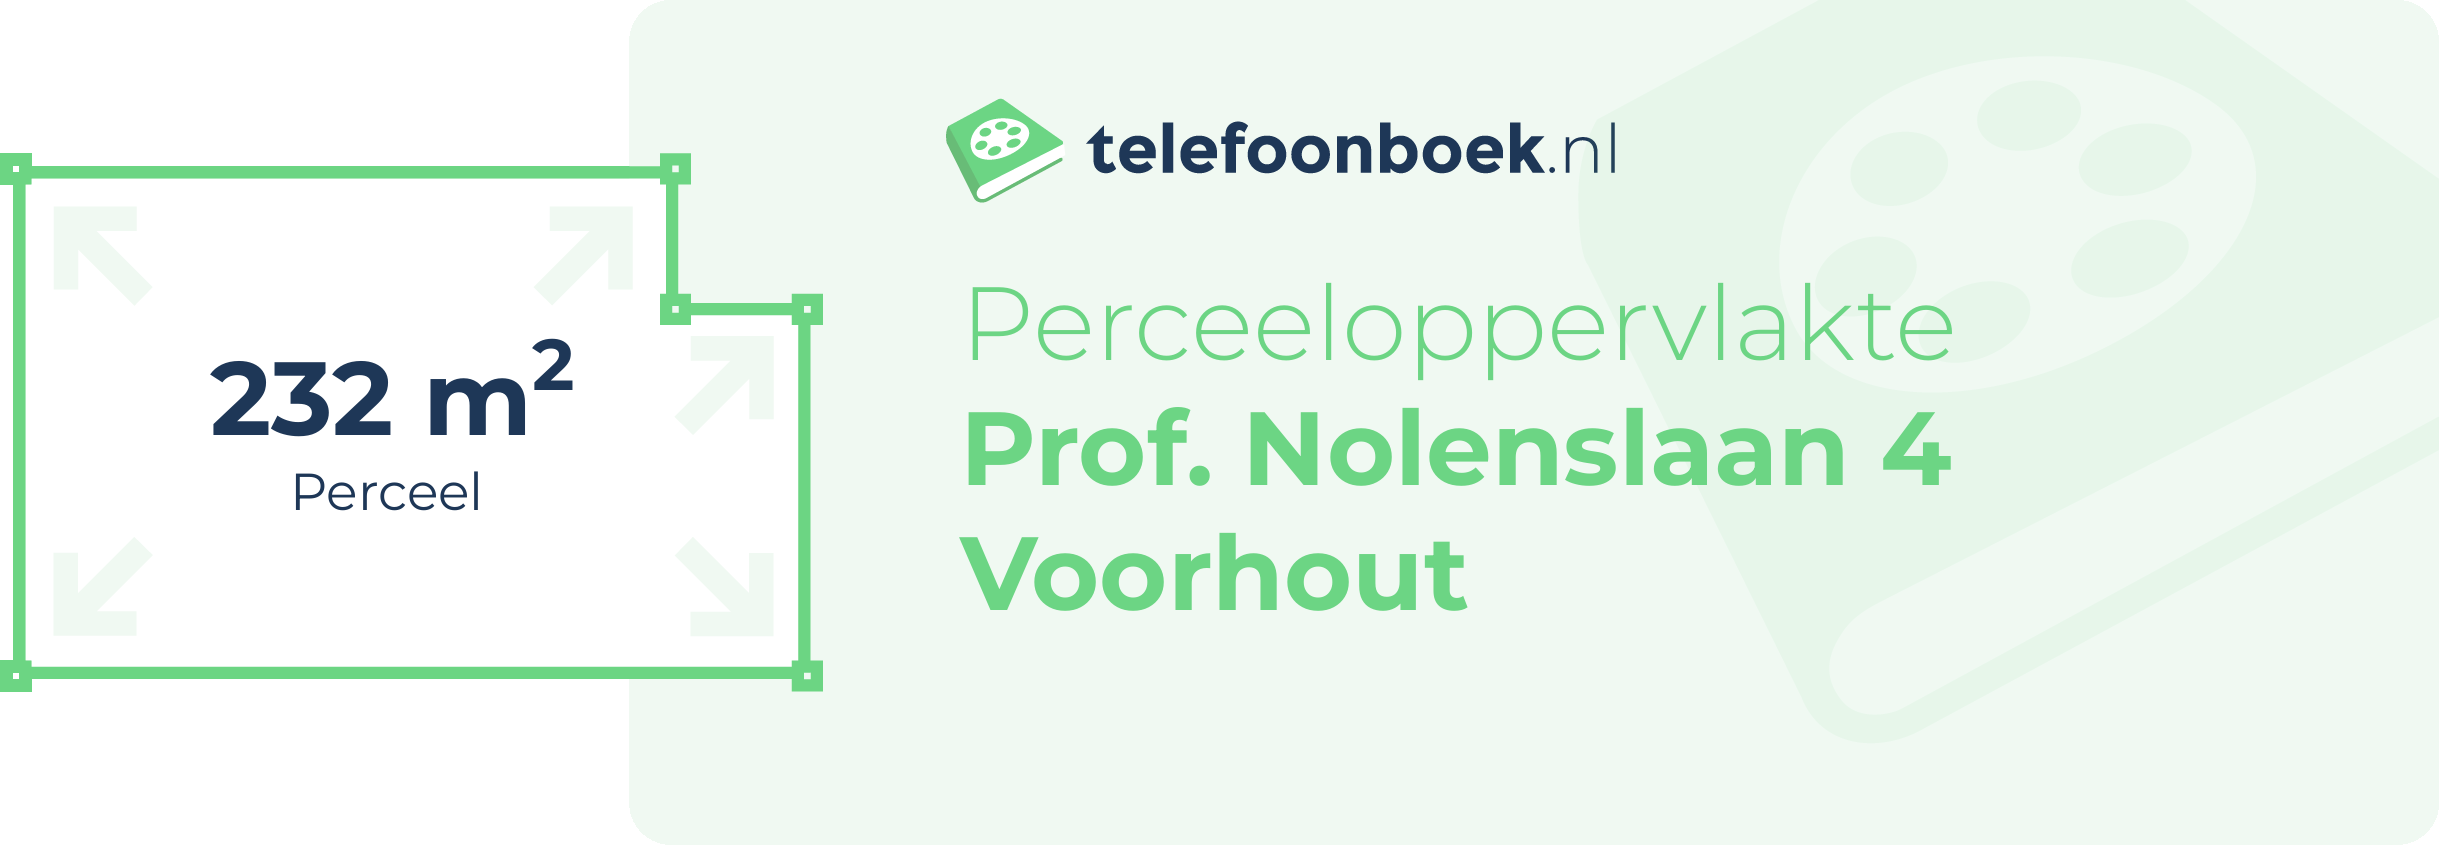 Perceeloppervlakte Prof. Nolenslaan 4 Voorhout